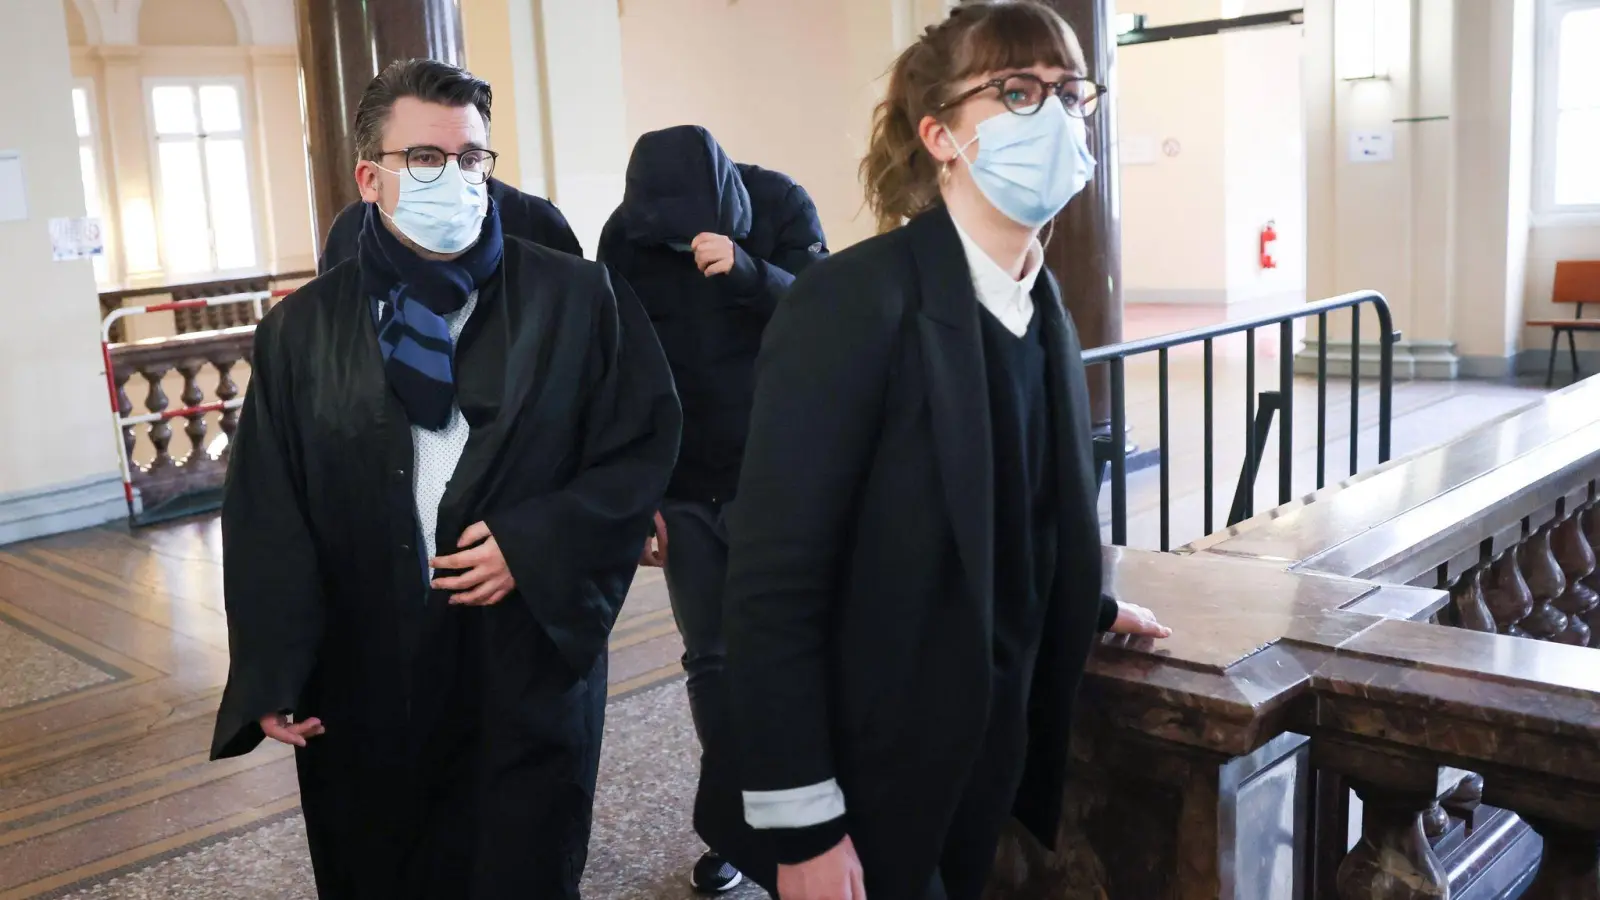 Der Angeklagte wird vor Beginn eines Prozesses von seinen Anwälten in den  Sitzungssaal begleitet. (Foto: Christian Charisius/dpa)